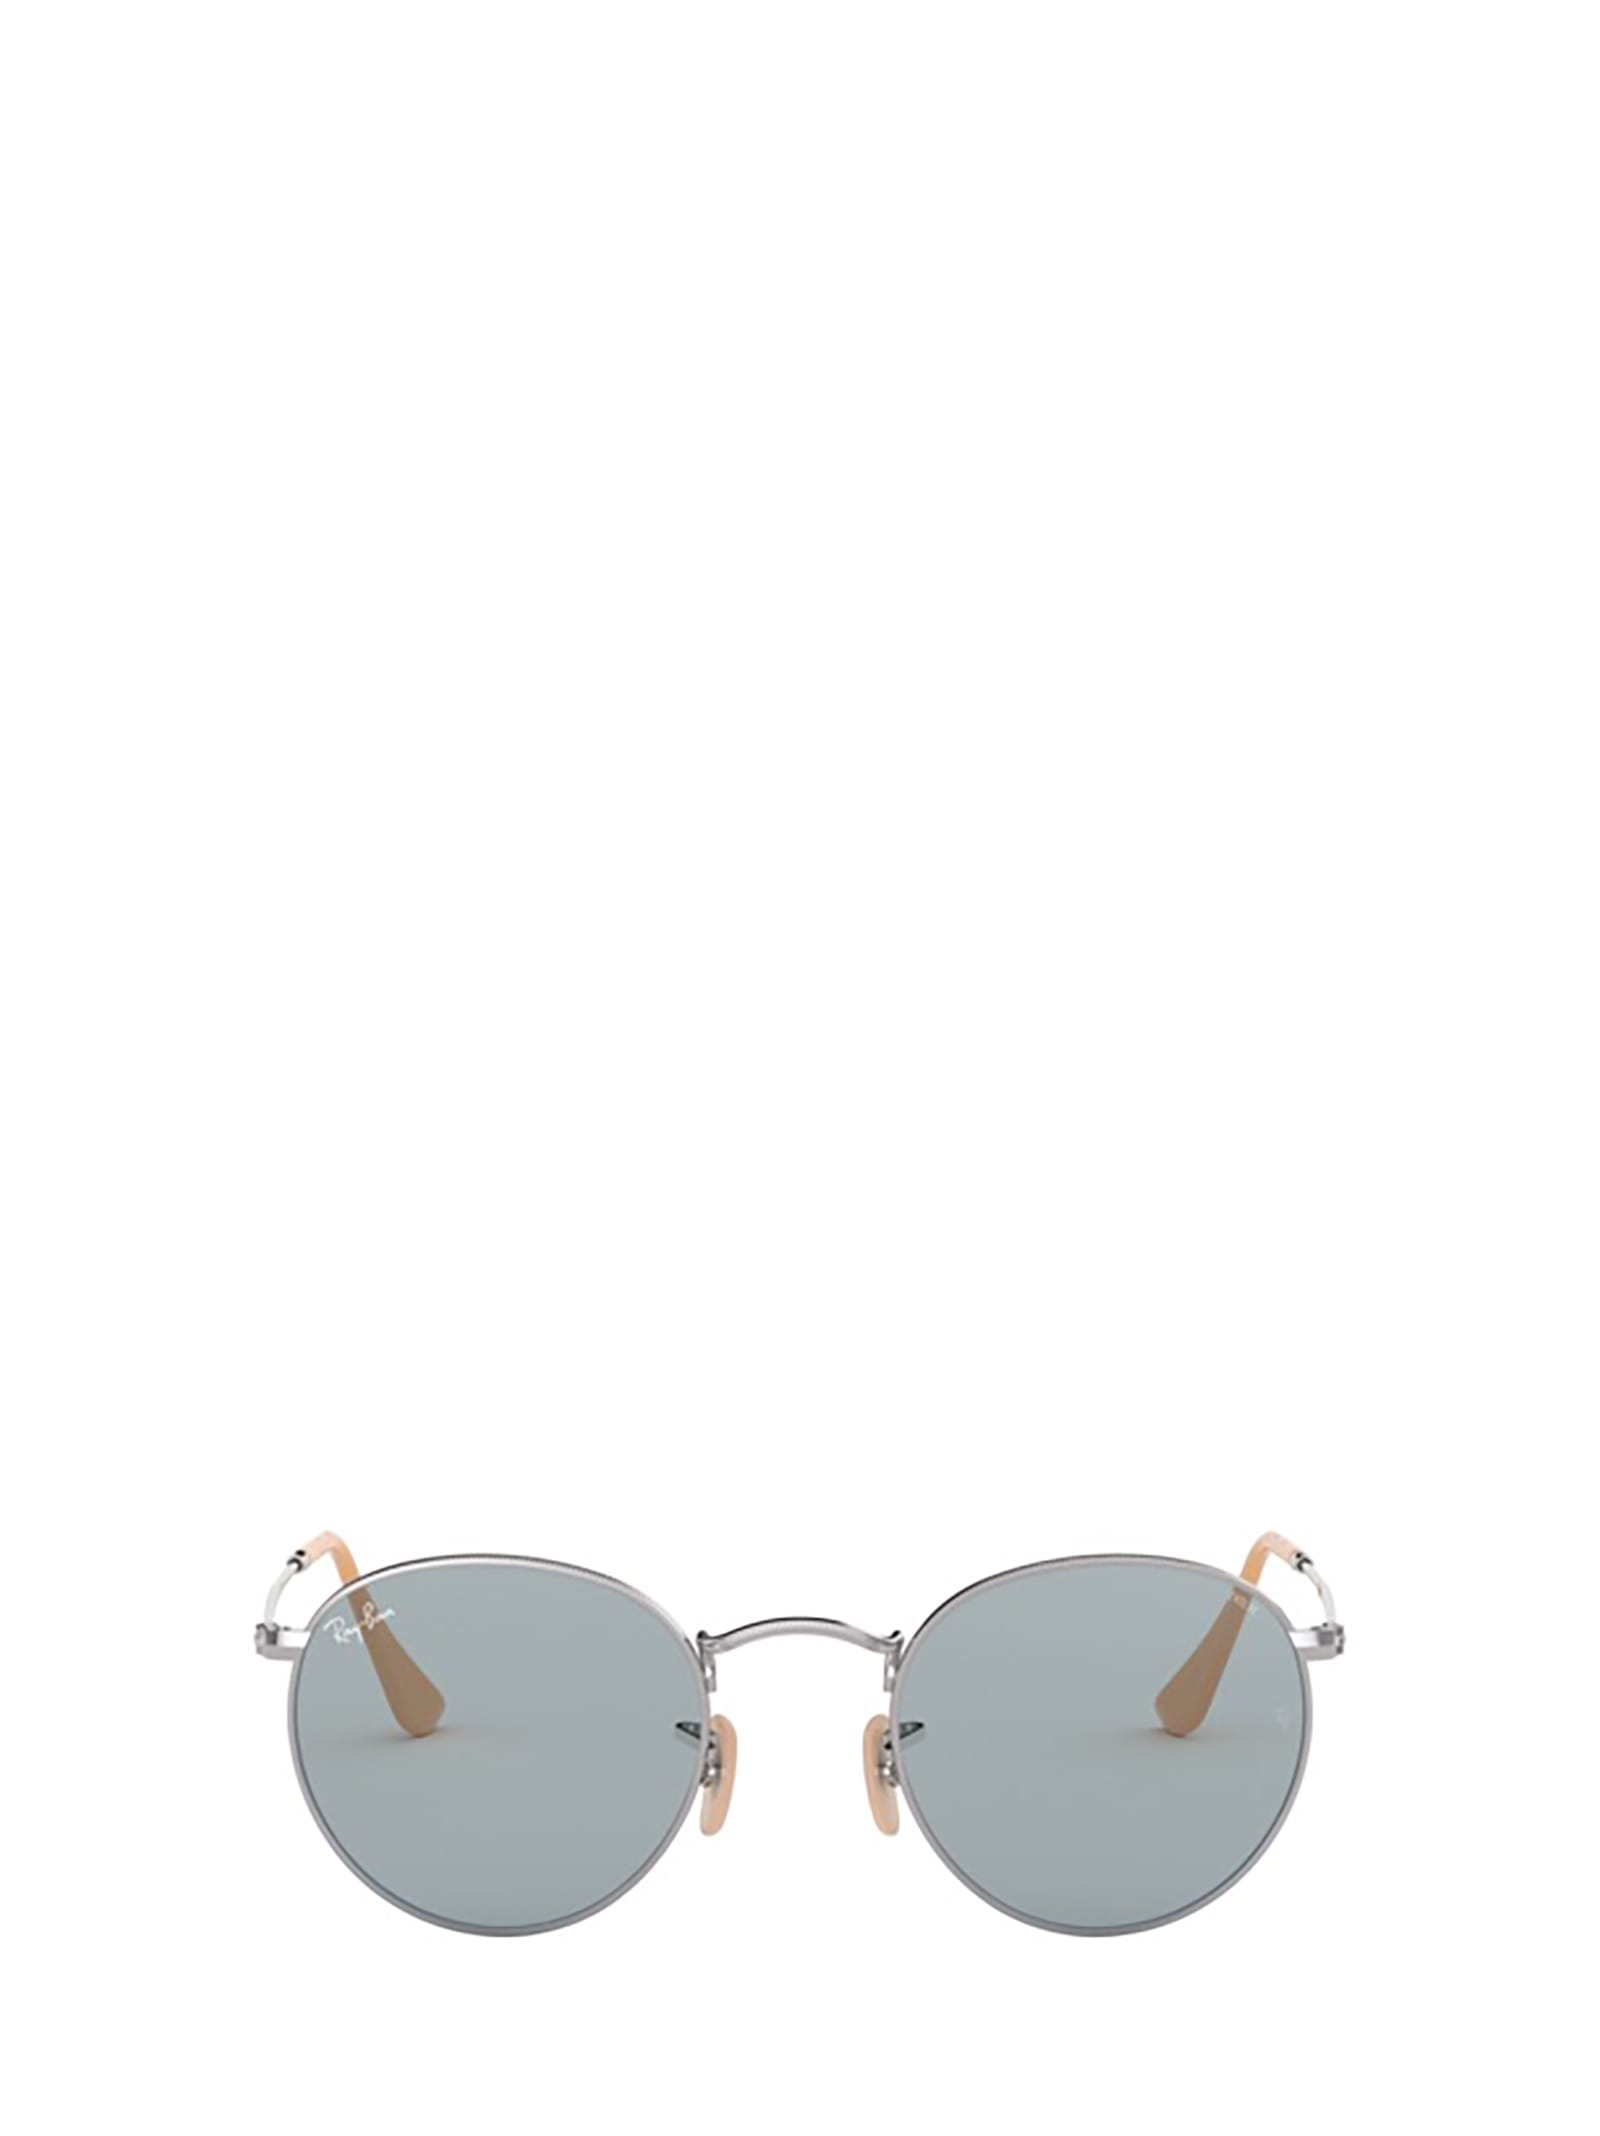 Ray Ban Ray-ban Rb3447 Silver Sunglasses